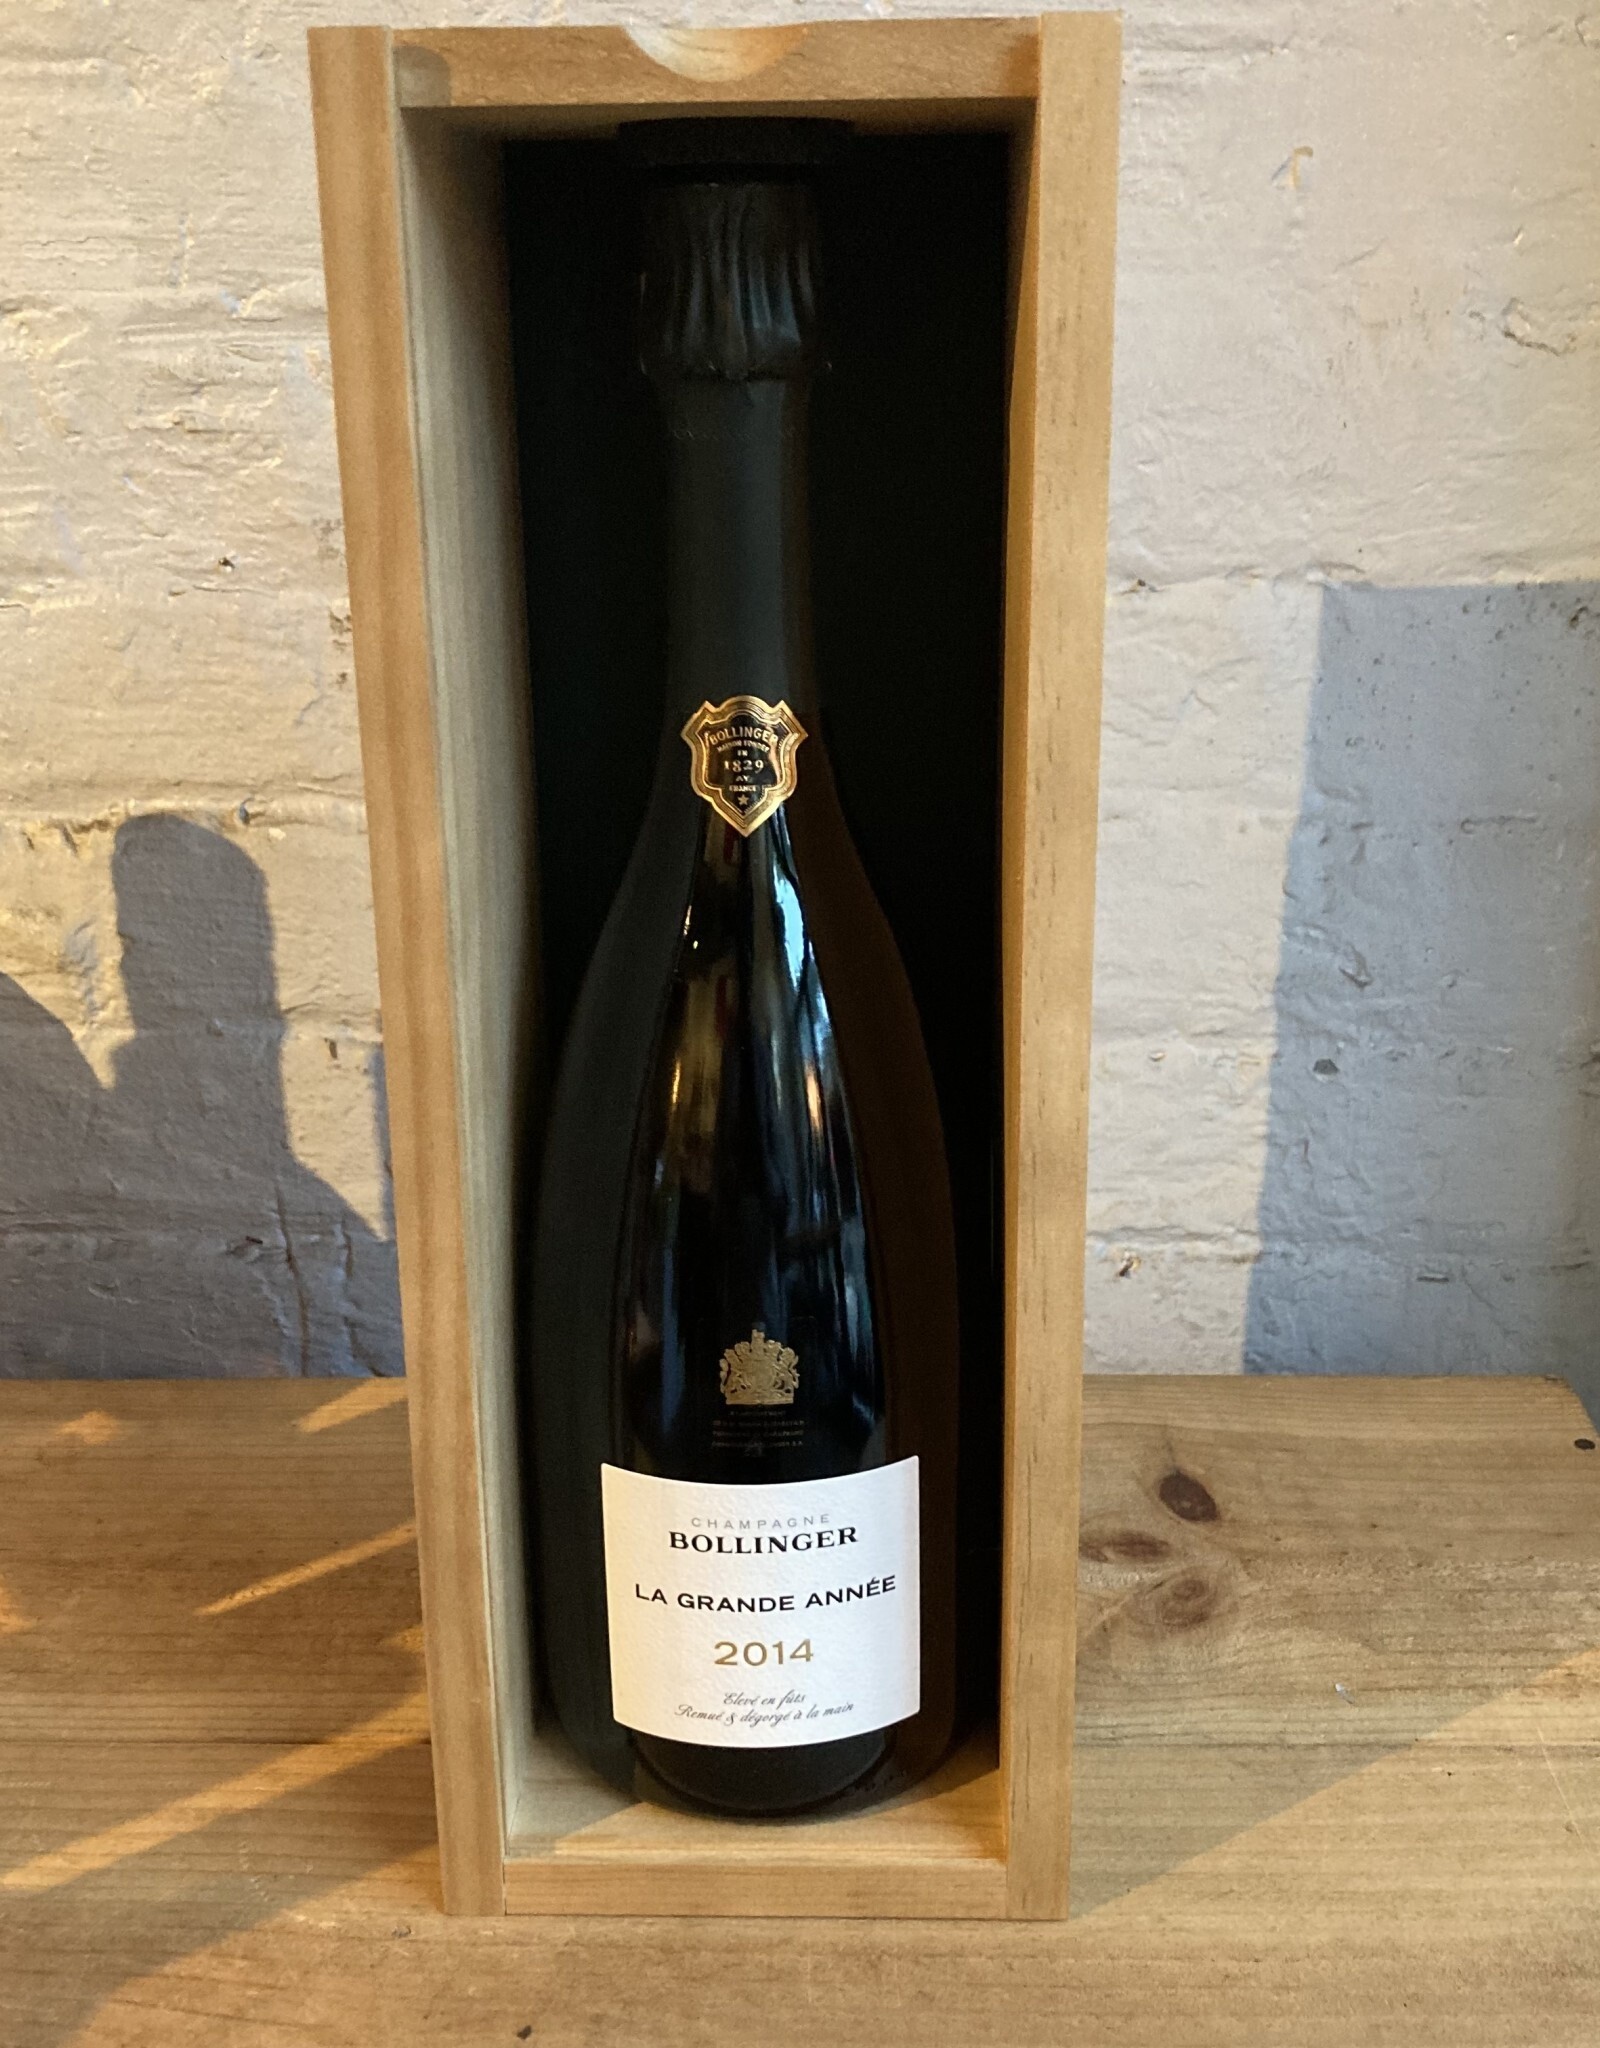 Wine 2014 Bollinger Brut La Grande Année - Champagne, France (750ml)